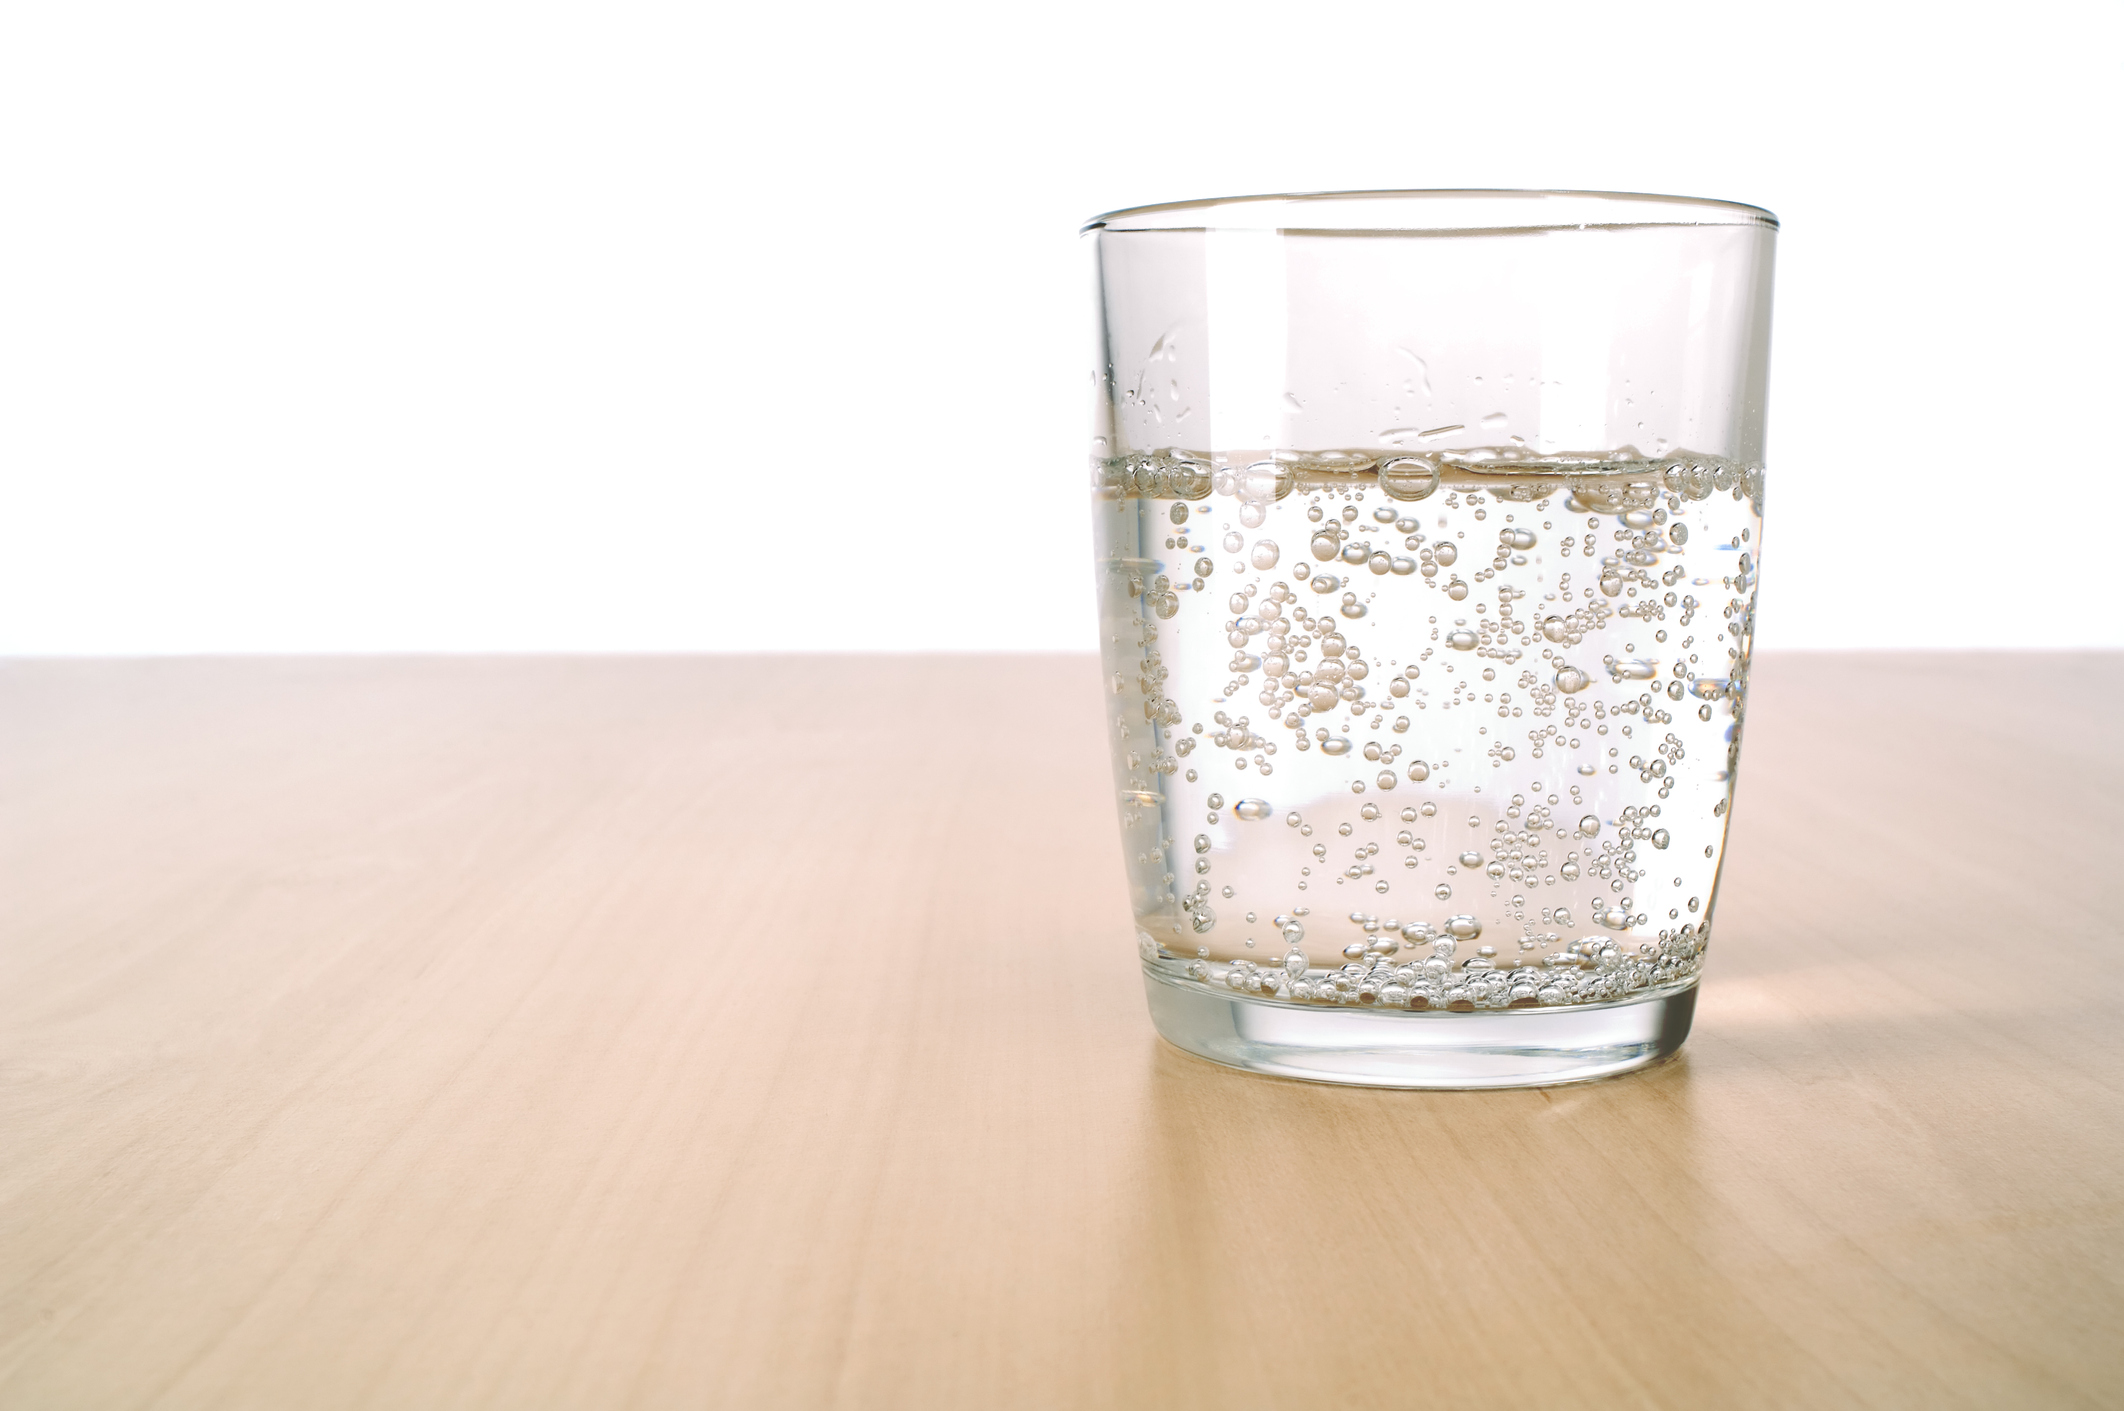 Порошок растворяют в воде для. Стакан воды. Стаканы для воды стеклянные. Стакан воды на столе. Стакан чистой воды.